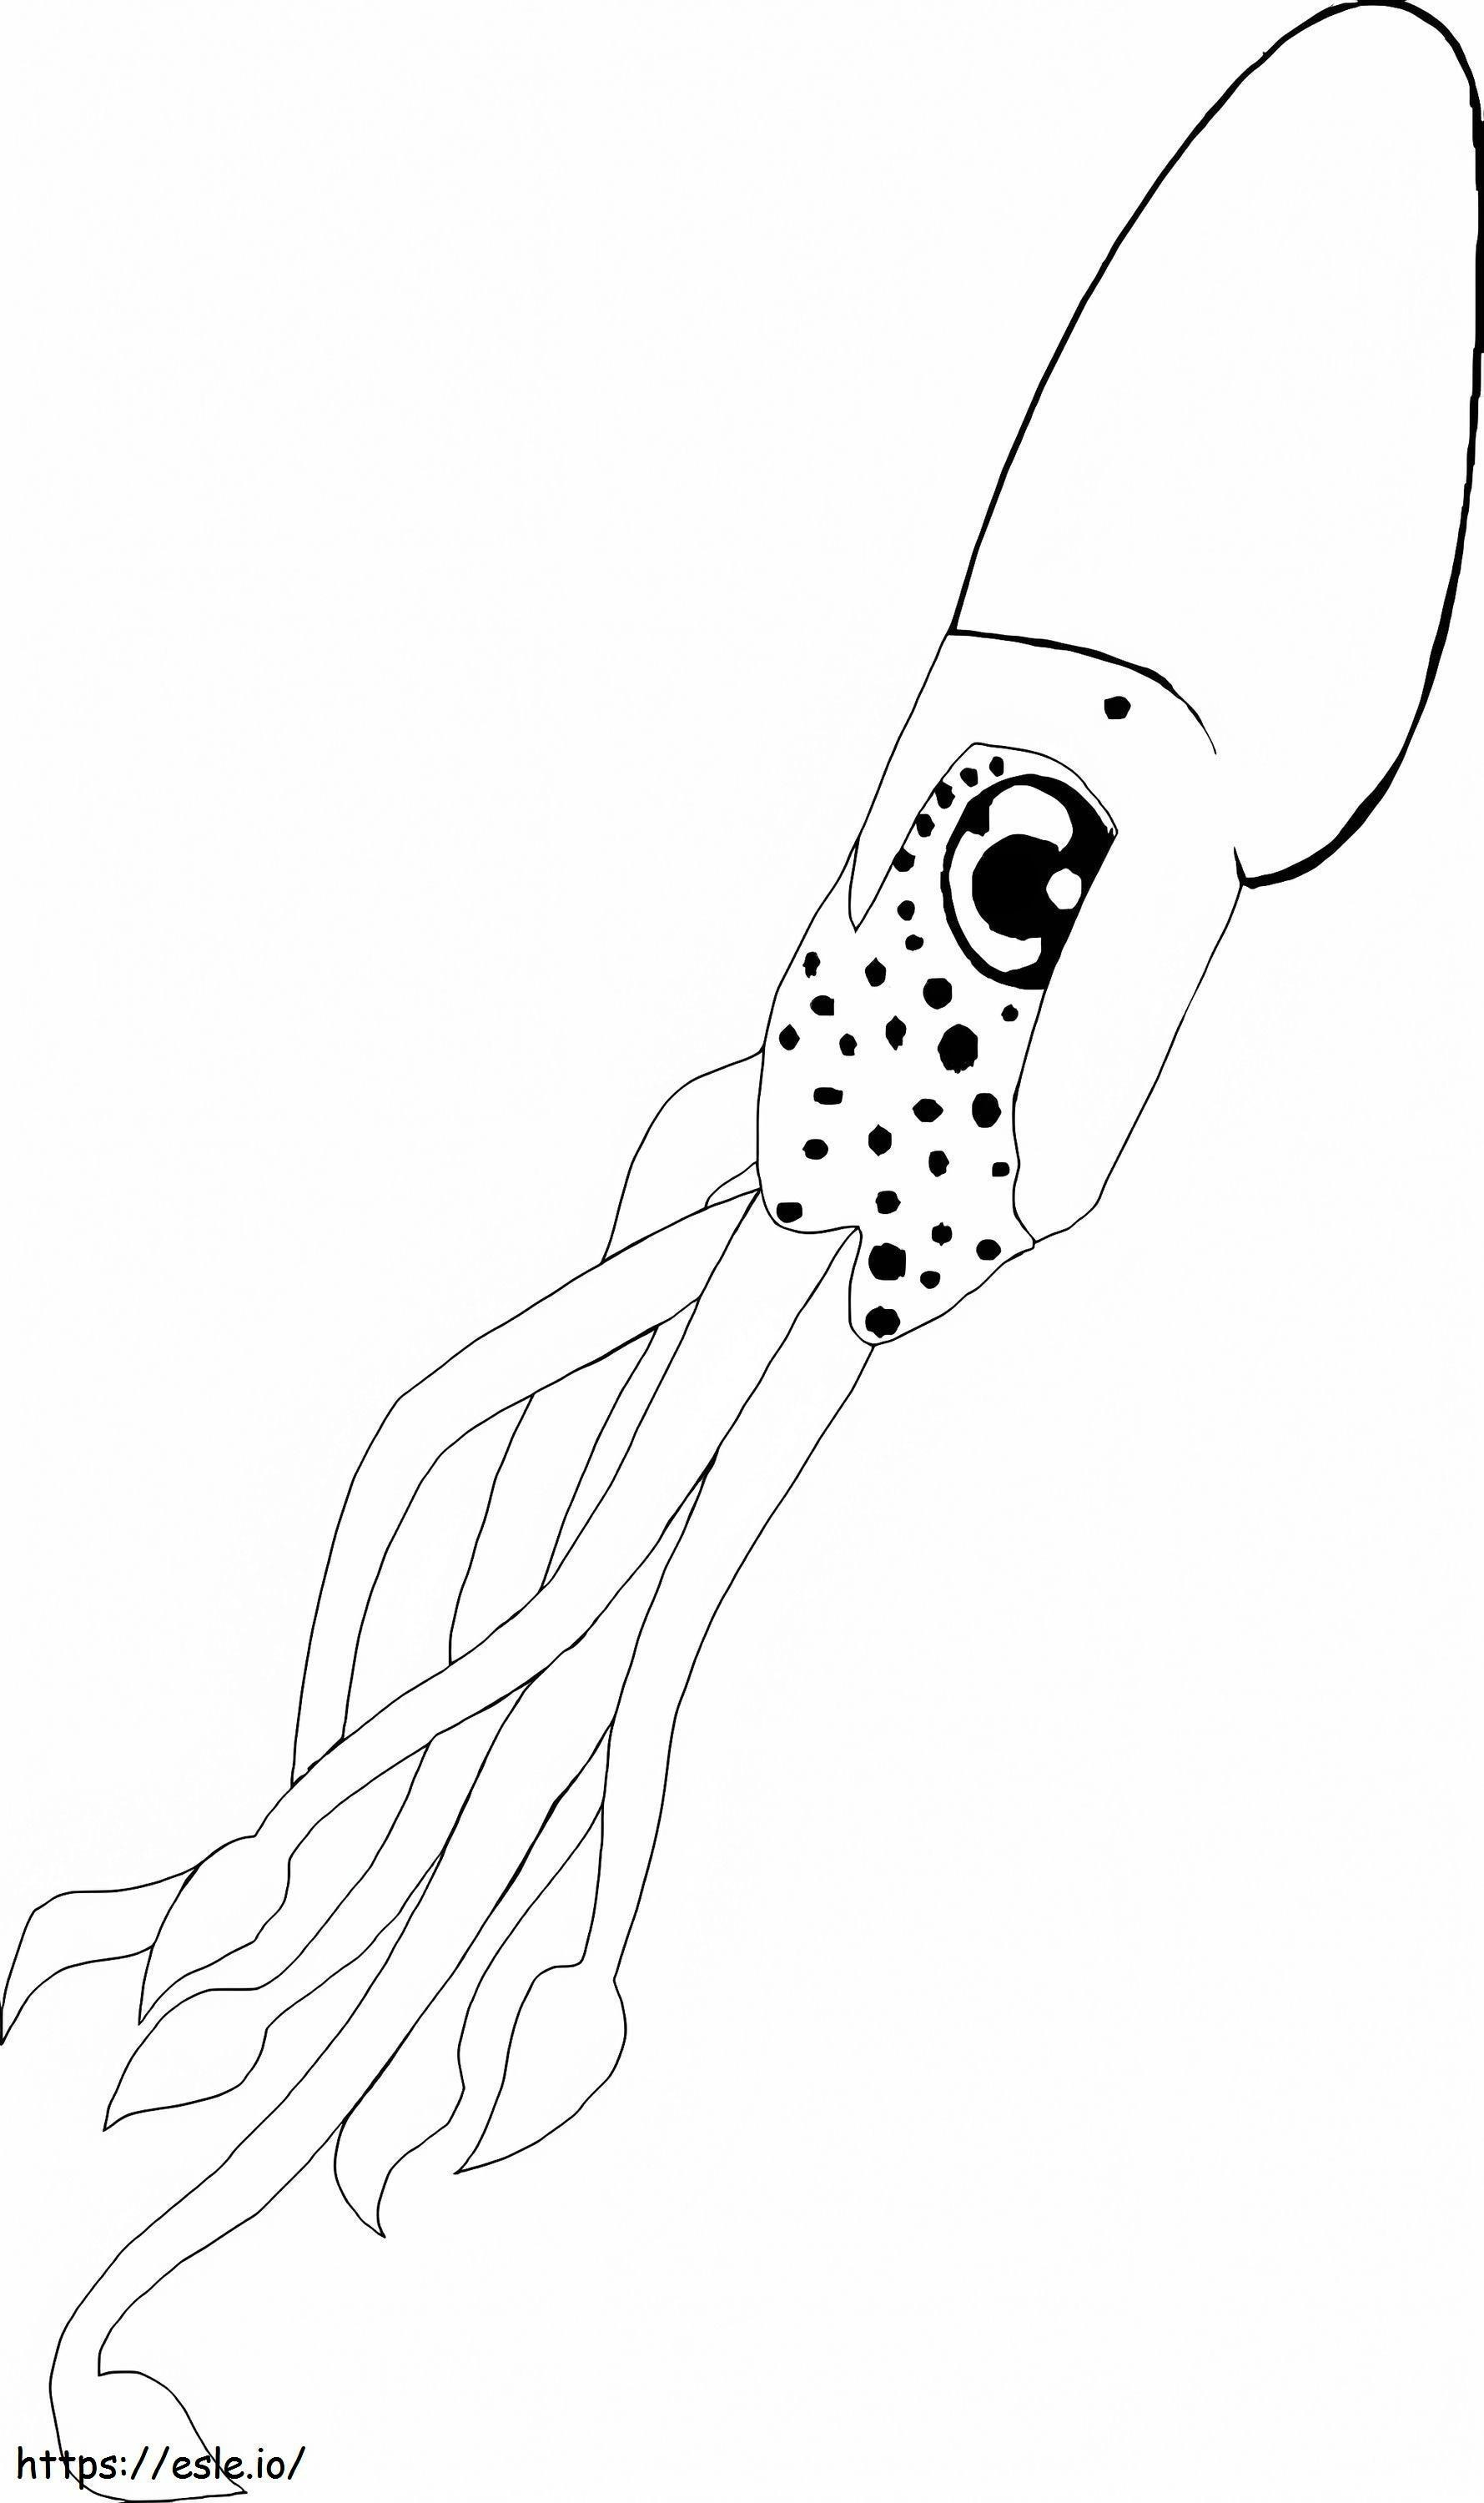 Bellissimo calamaro da colorare